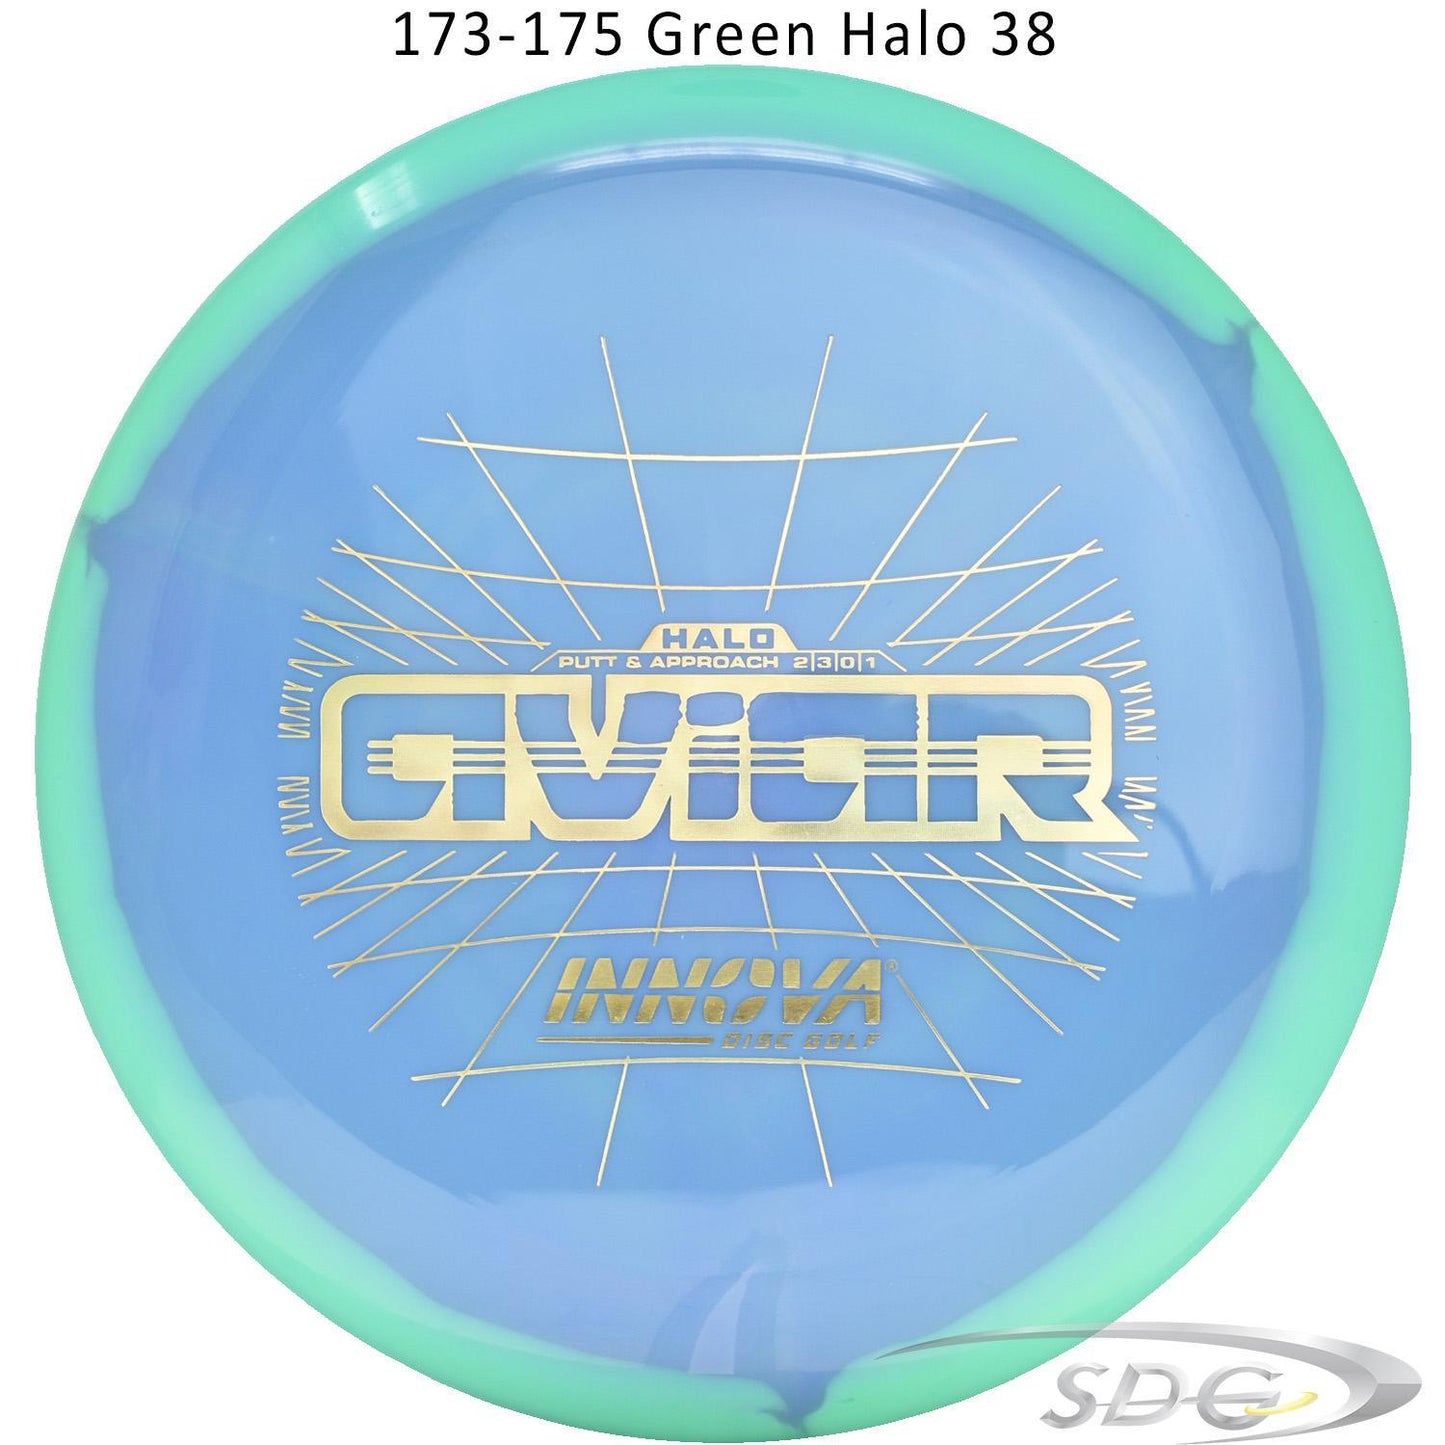 innova-halo-star-aviar-disc-golf-putter 173-175 Green Halo 38 